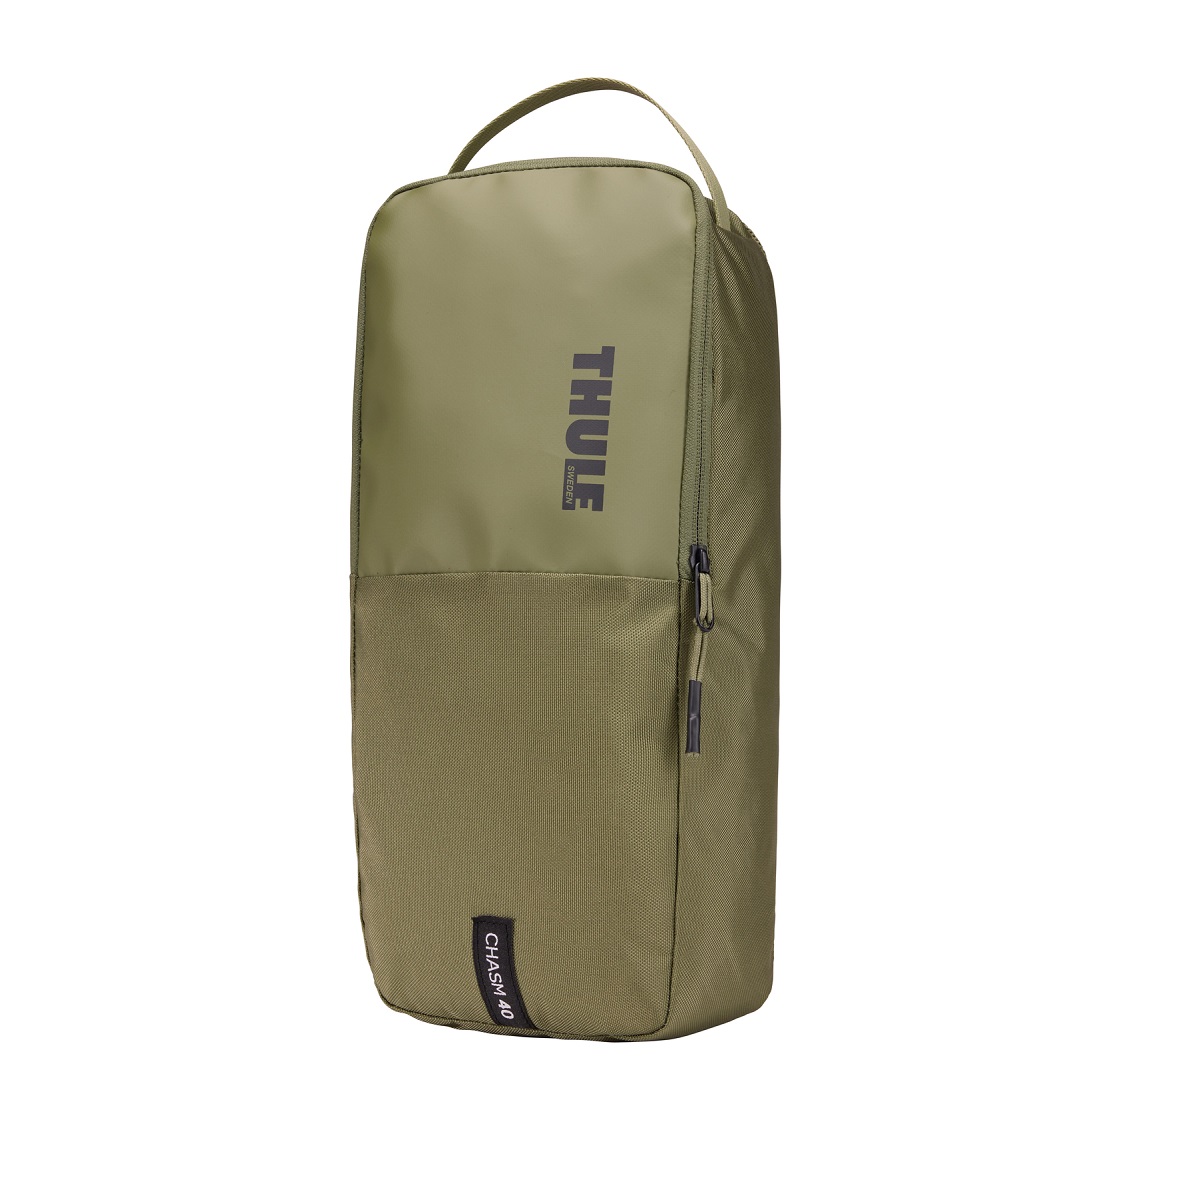 Sportska/putna torba i ruksak 2u1 Thule Chasm 40 L - maslinastozelena